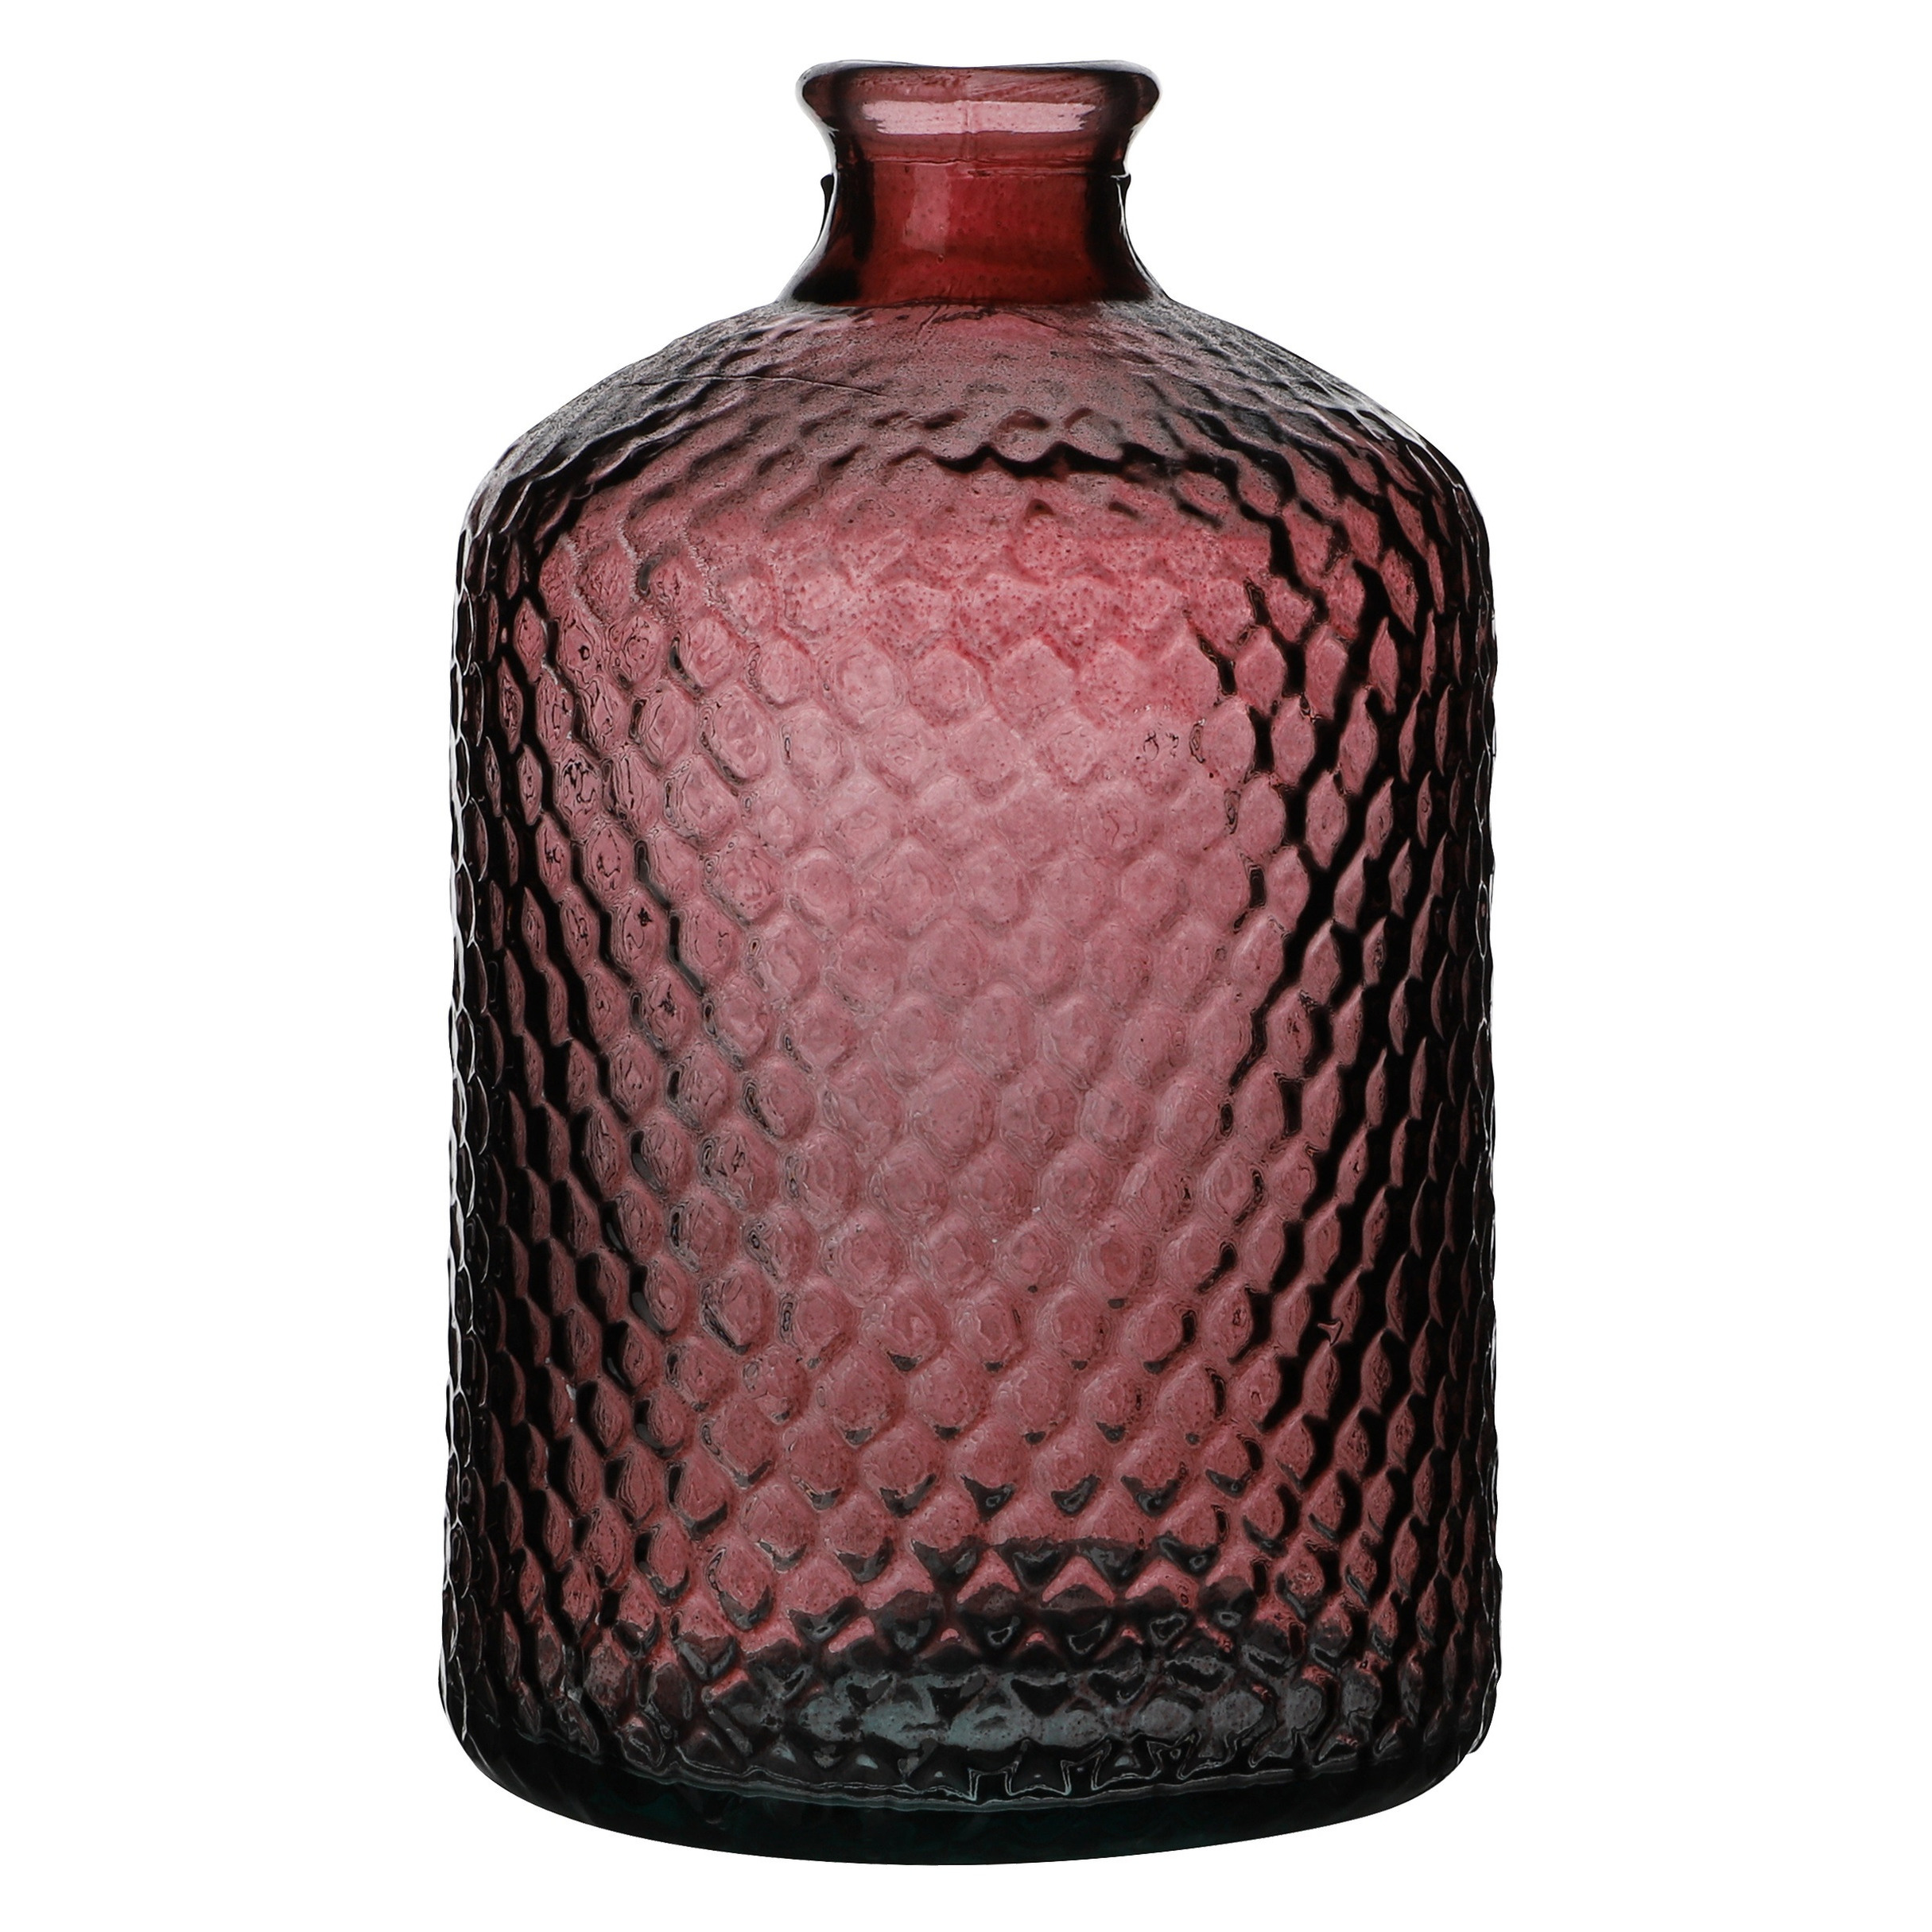 Bloemenvaas Scubs Bottle robijn rood geschubt transparant glas D18 x H31 cm Fles vazen